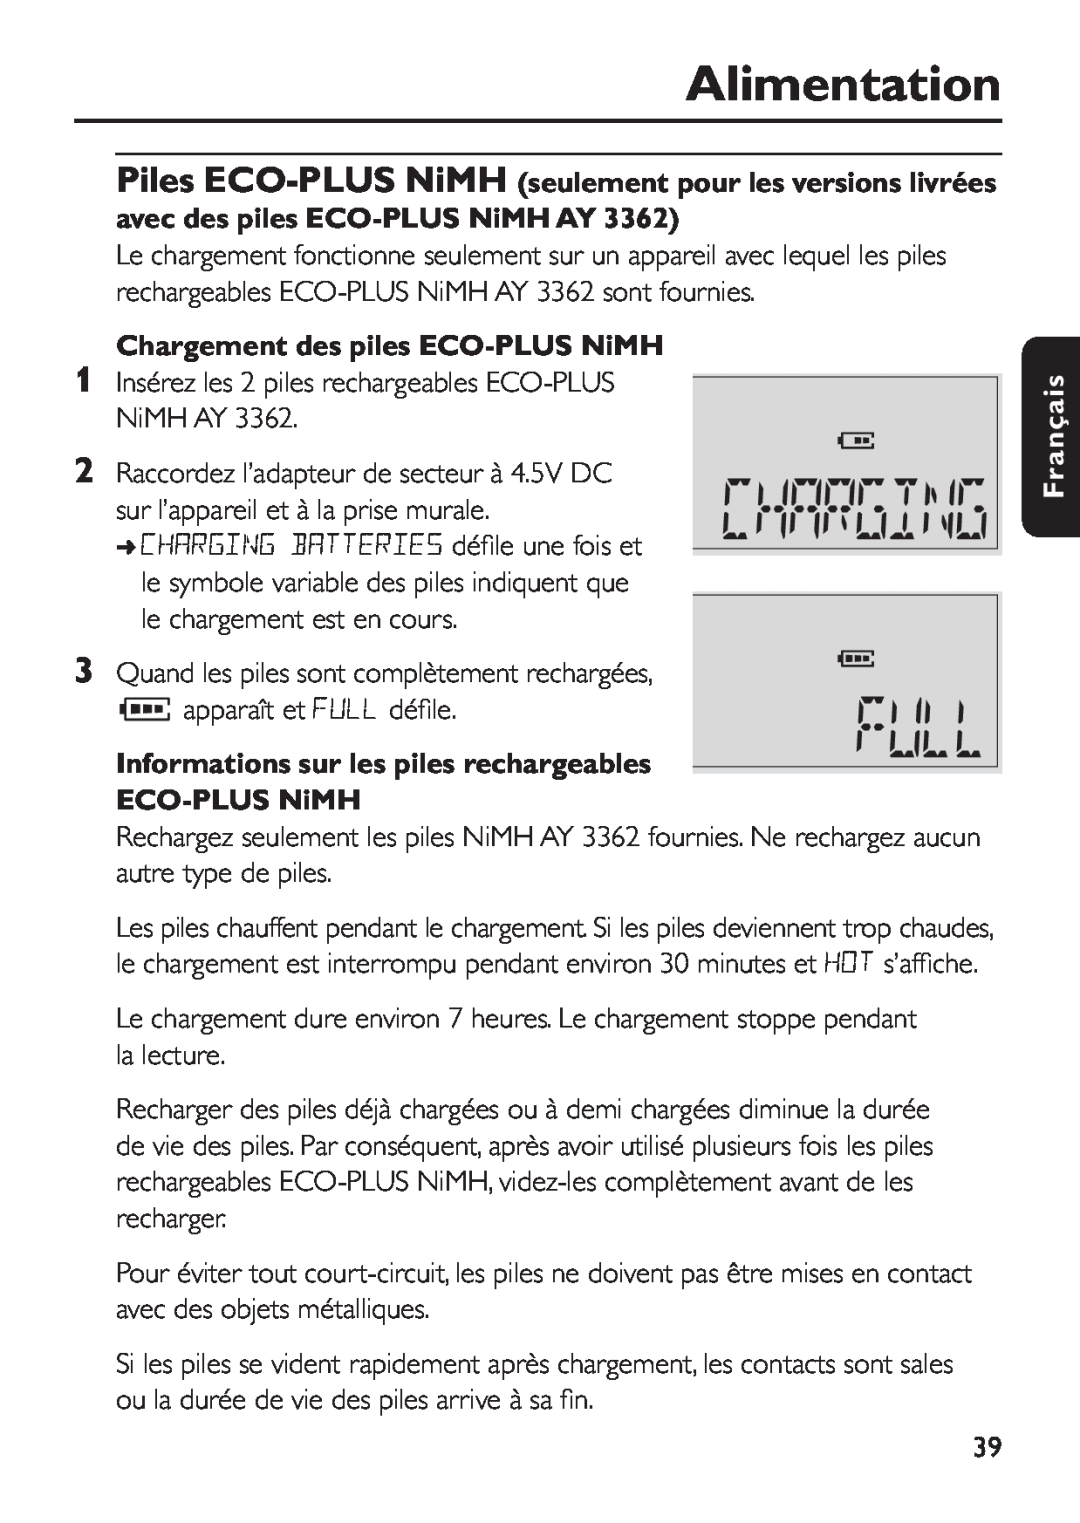 Philips EXP 501/00 Chargement des piles ECO-PLUS NiMH, Informations sur les piles rechargeables ECO-PLUS NiMH, Français 